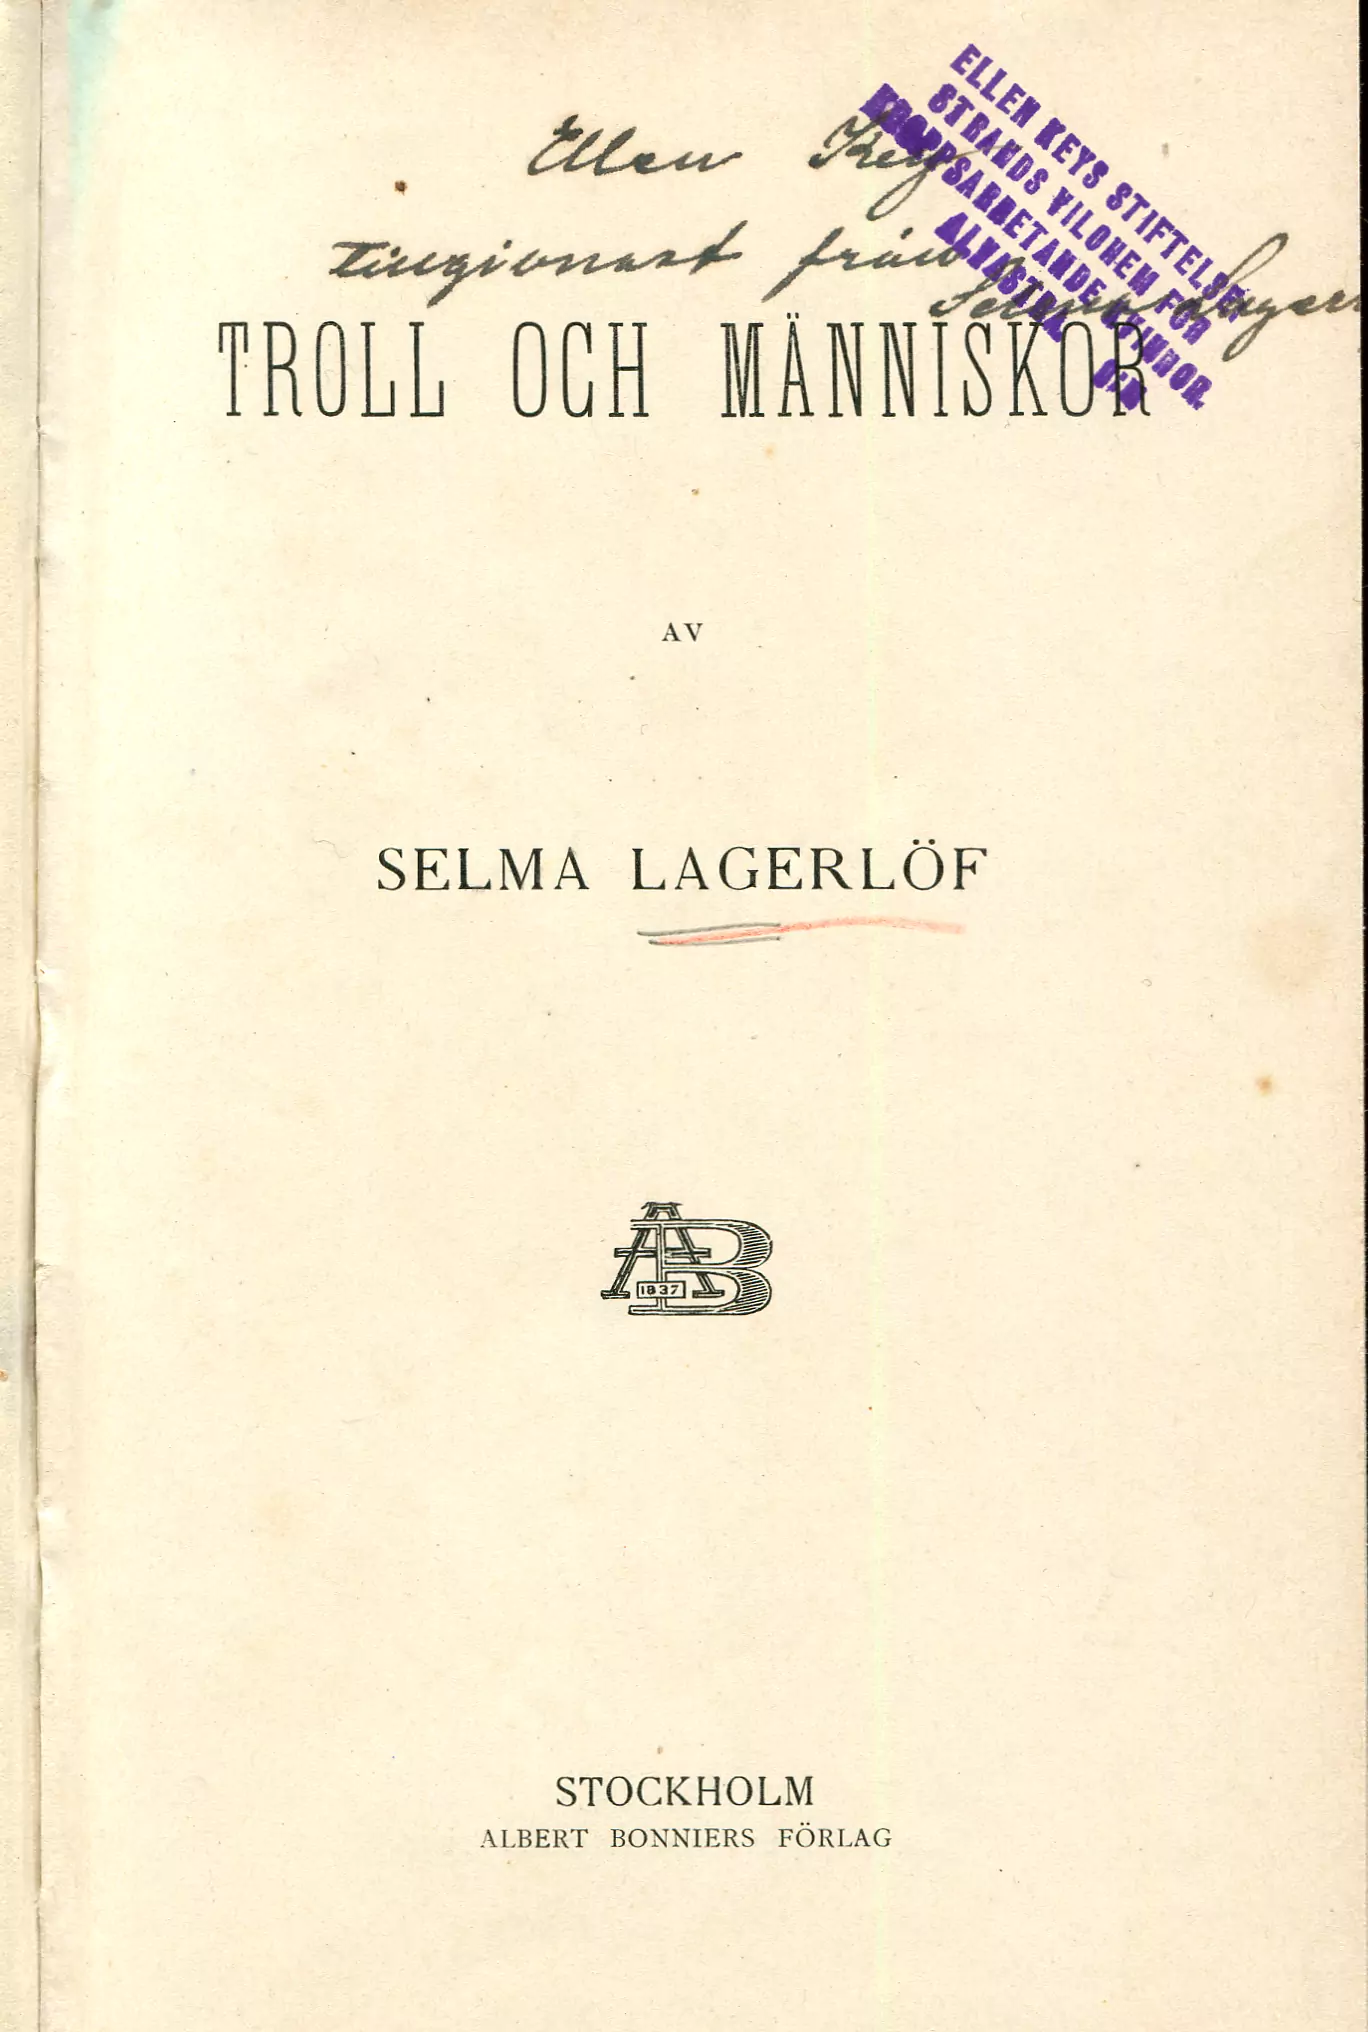 Troll och människor [Saml. 1], Stockholm 1915